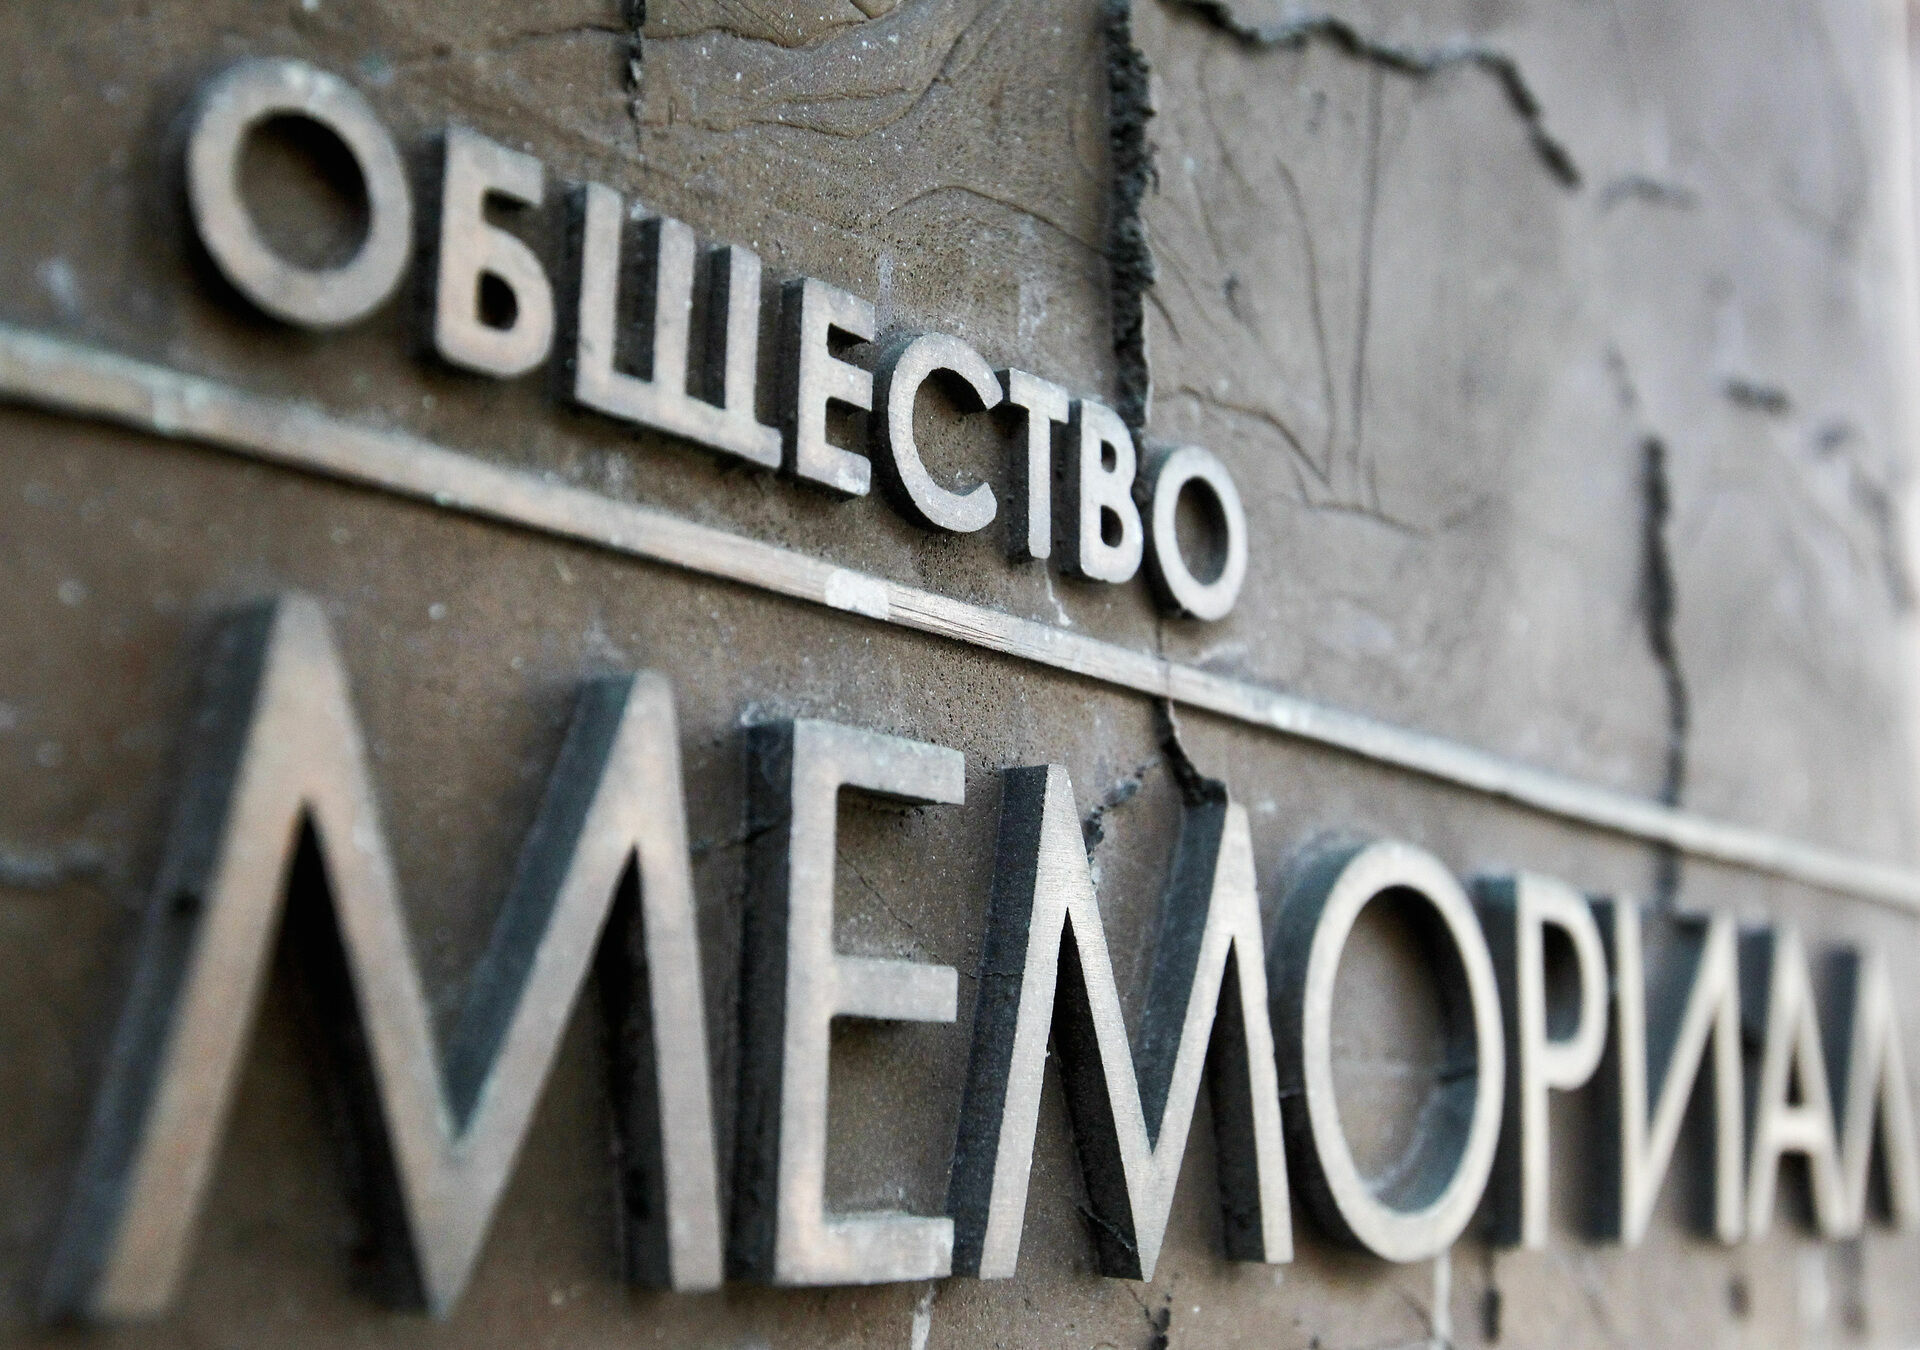 Опрос показал, что большинство россиян поддерживает правозащитный "Мемориал"*